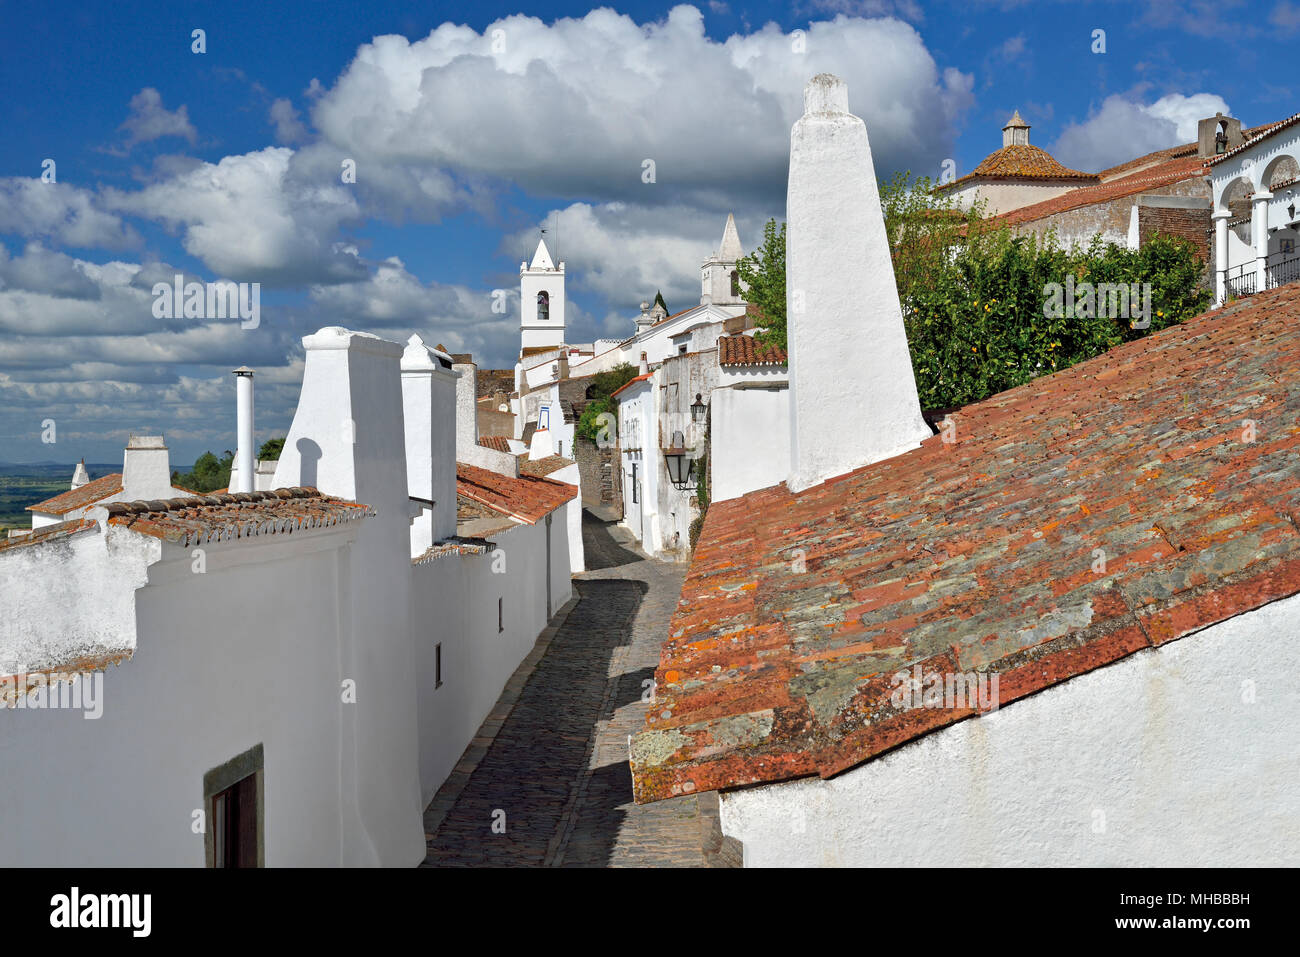 Vista del camino idílico y medieval de casas pintadas de blanco con enormes chimeneas Foto de stock